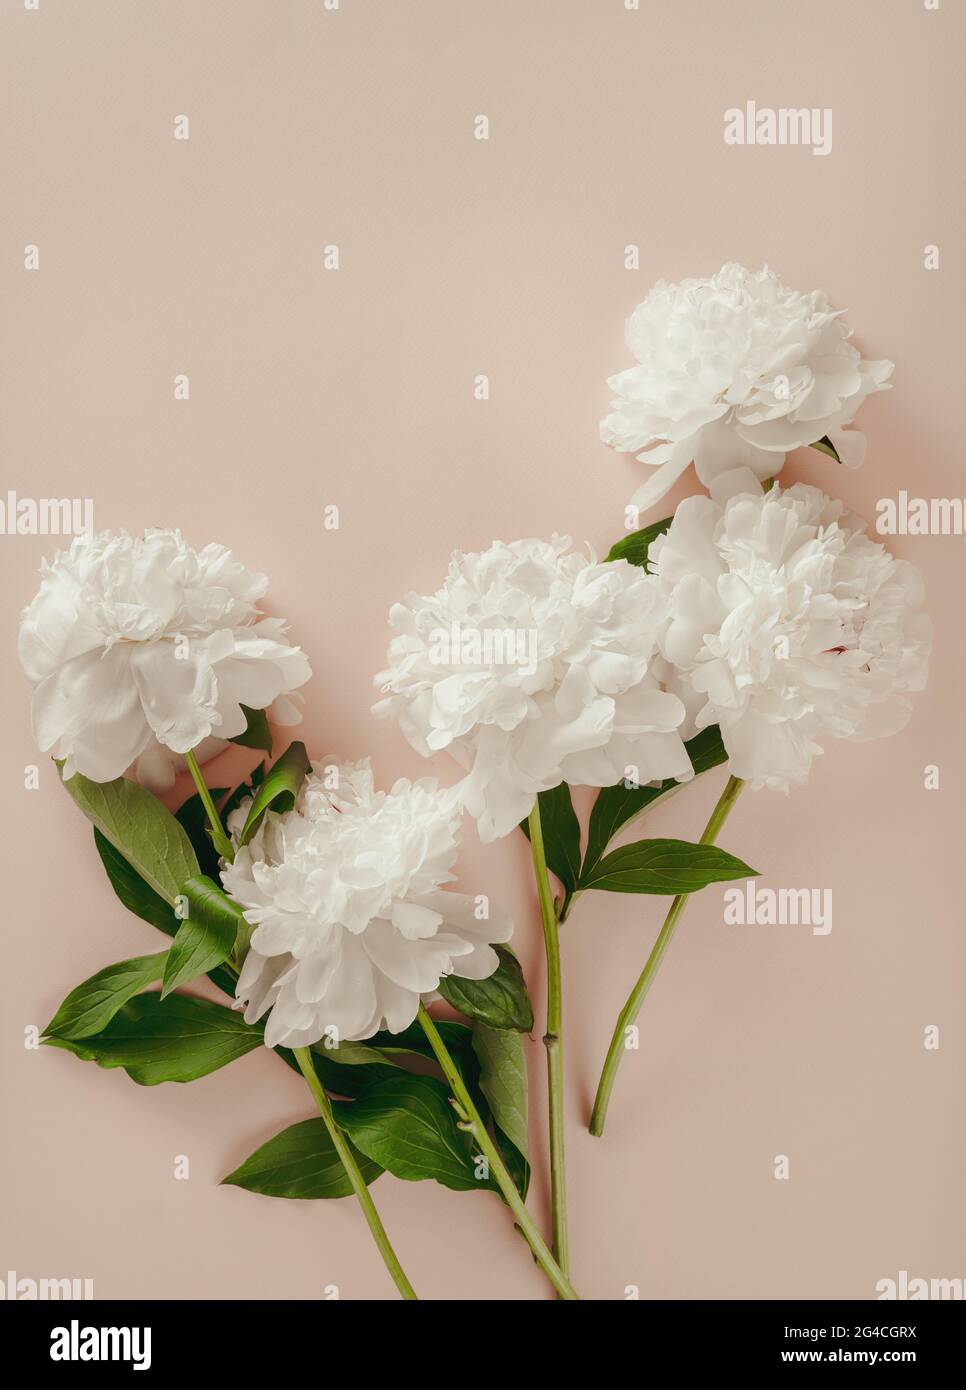 Wunderschöne weiße Pfingstrosen-Blüten auf pastellrosa Hintergrund. Romantischer Hintergrund mit weißem Pfingstrosen-Bouquet. Stockfoto